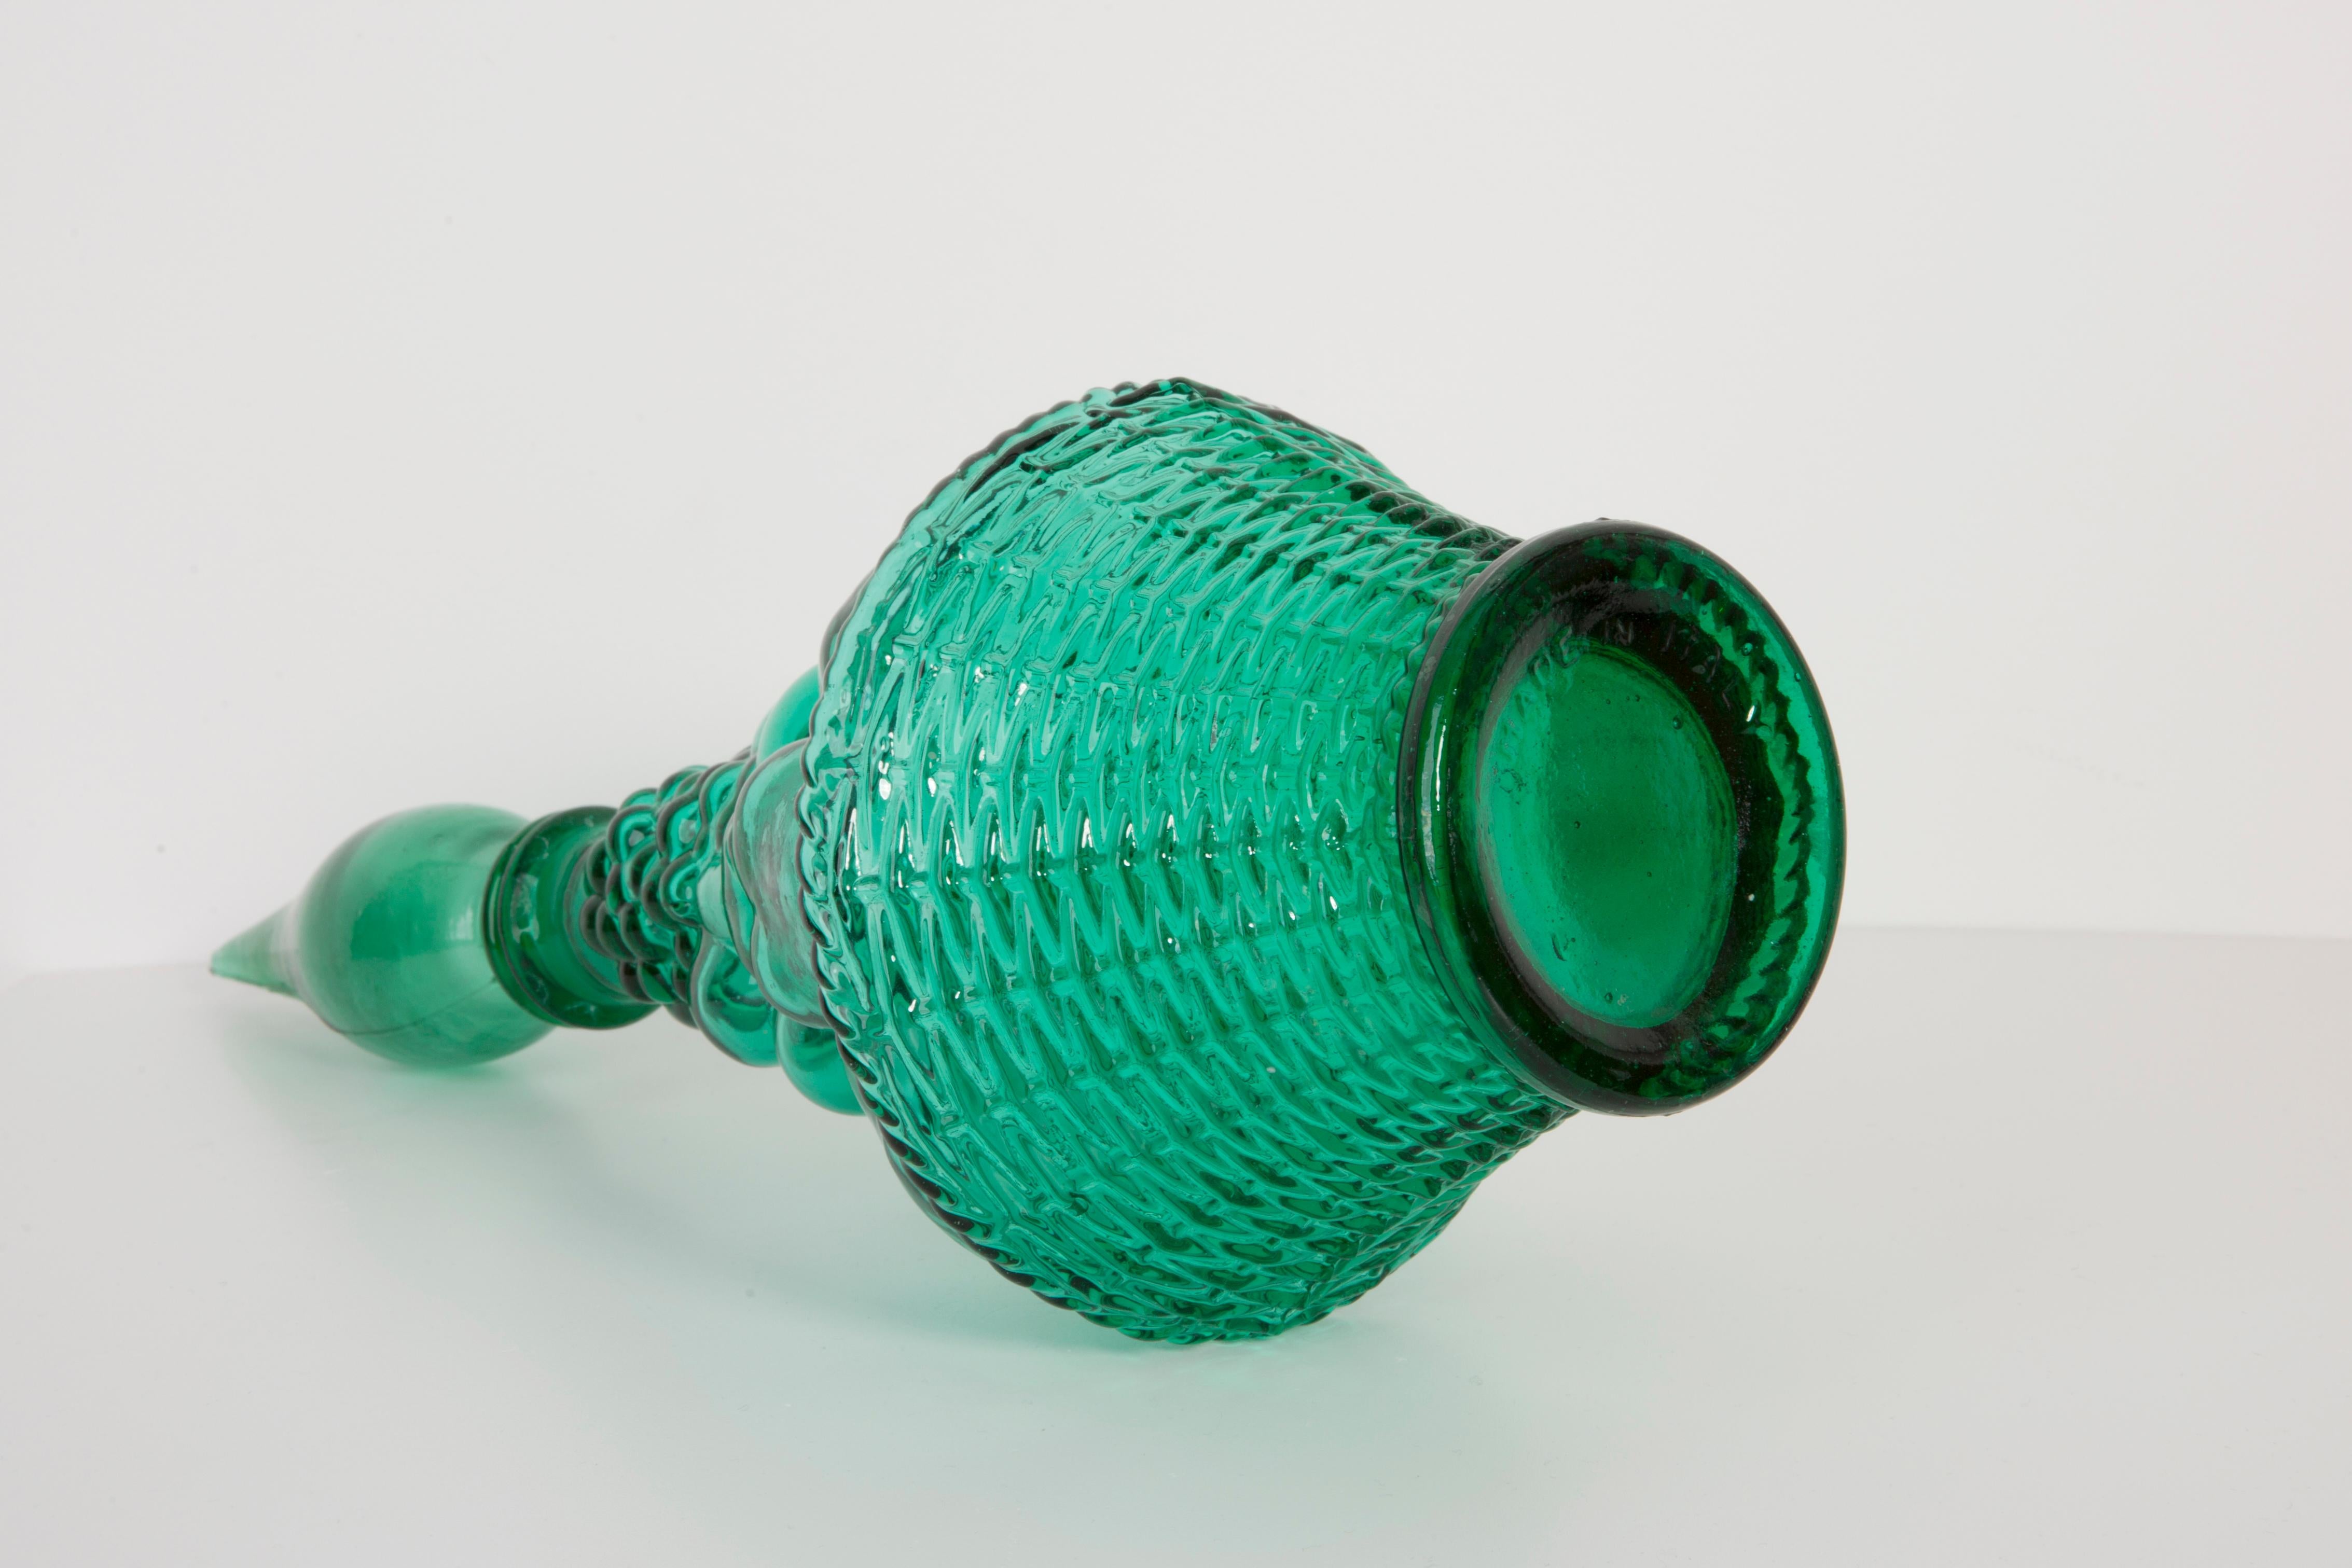 Une étonnante carafe en verre vert à motif géométrique, fabriquée par l'un des nombreux fabricants de verre basés dans la région d'Empoli, en Italie. La base porte l'inscription 